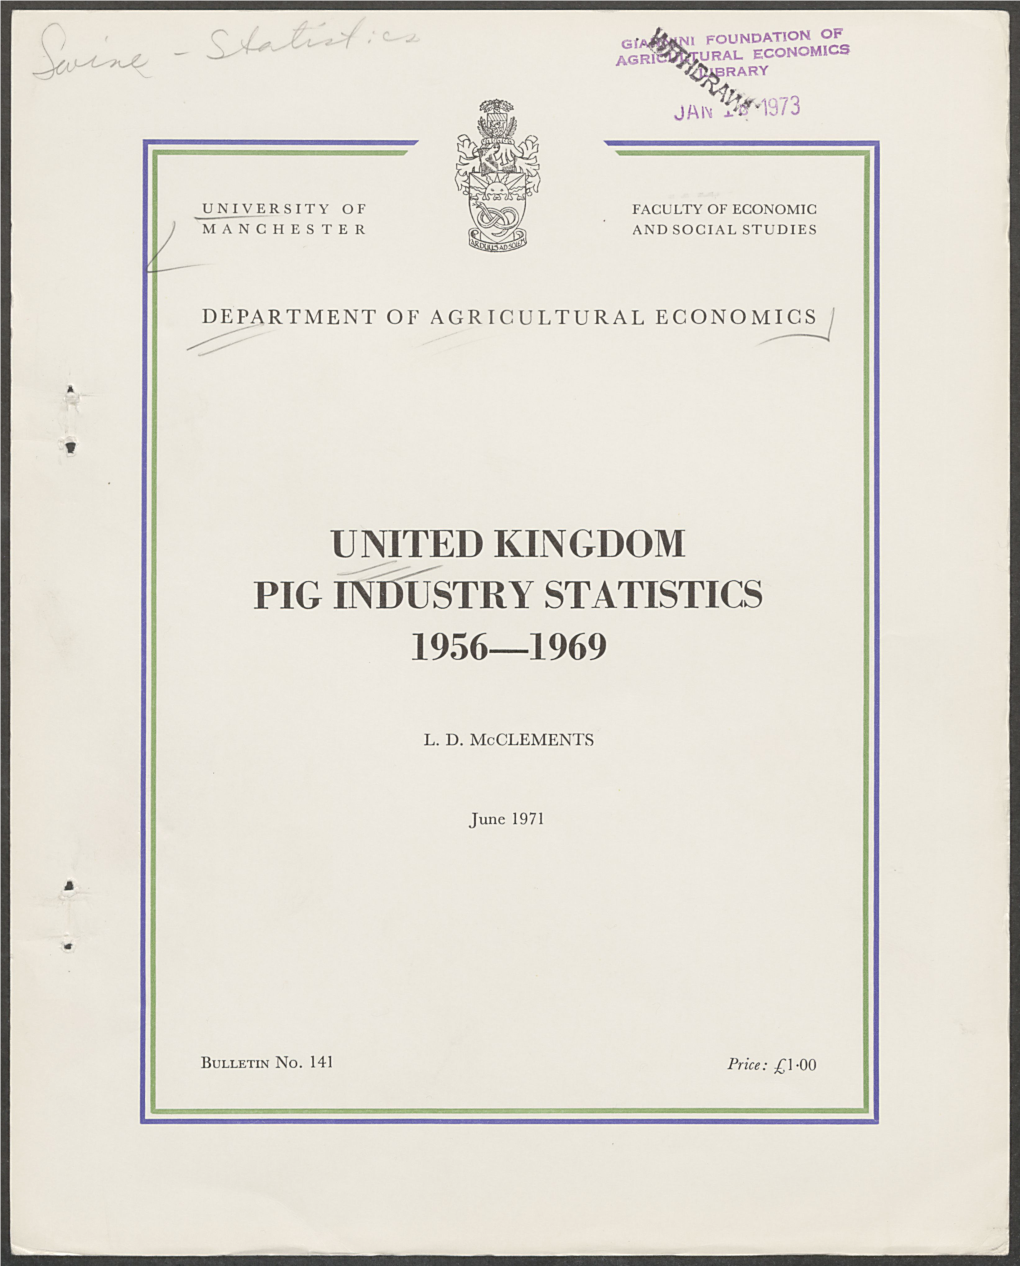 United Kingdom Pig Industry Statistics 1956-1969